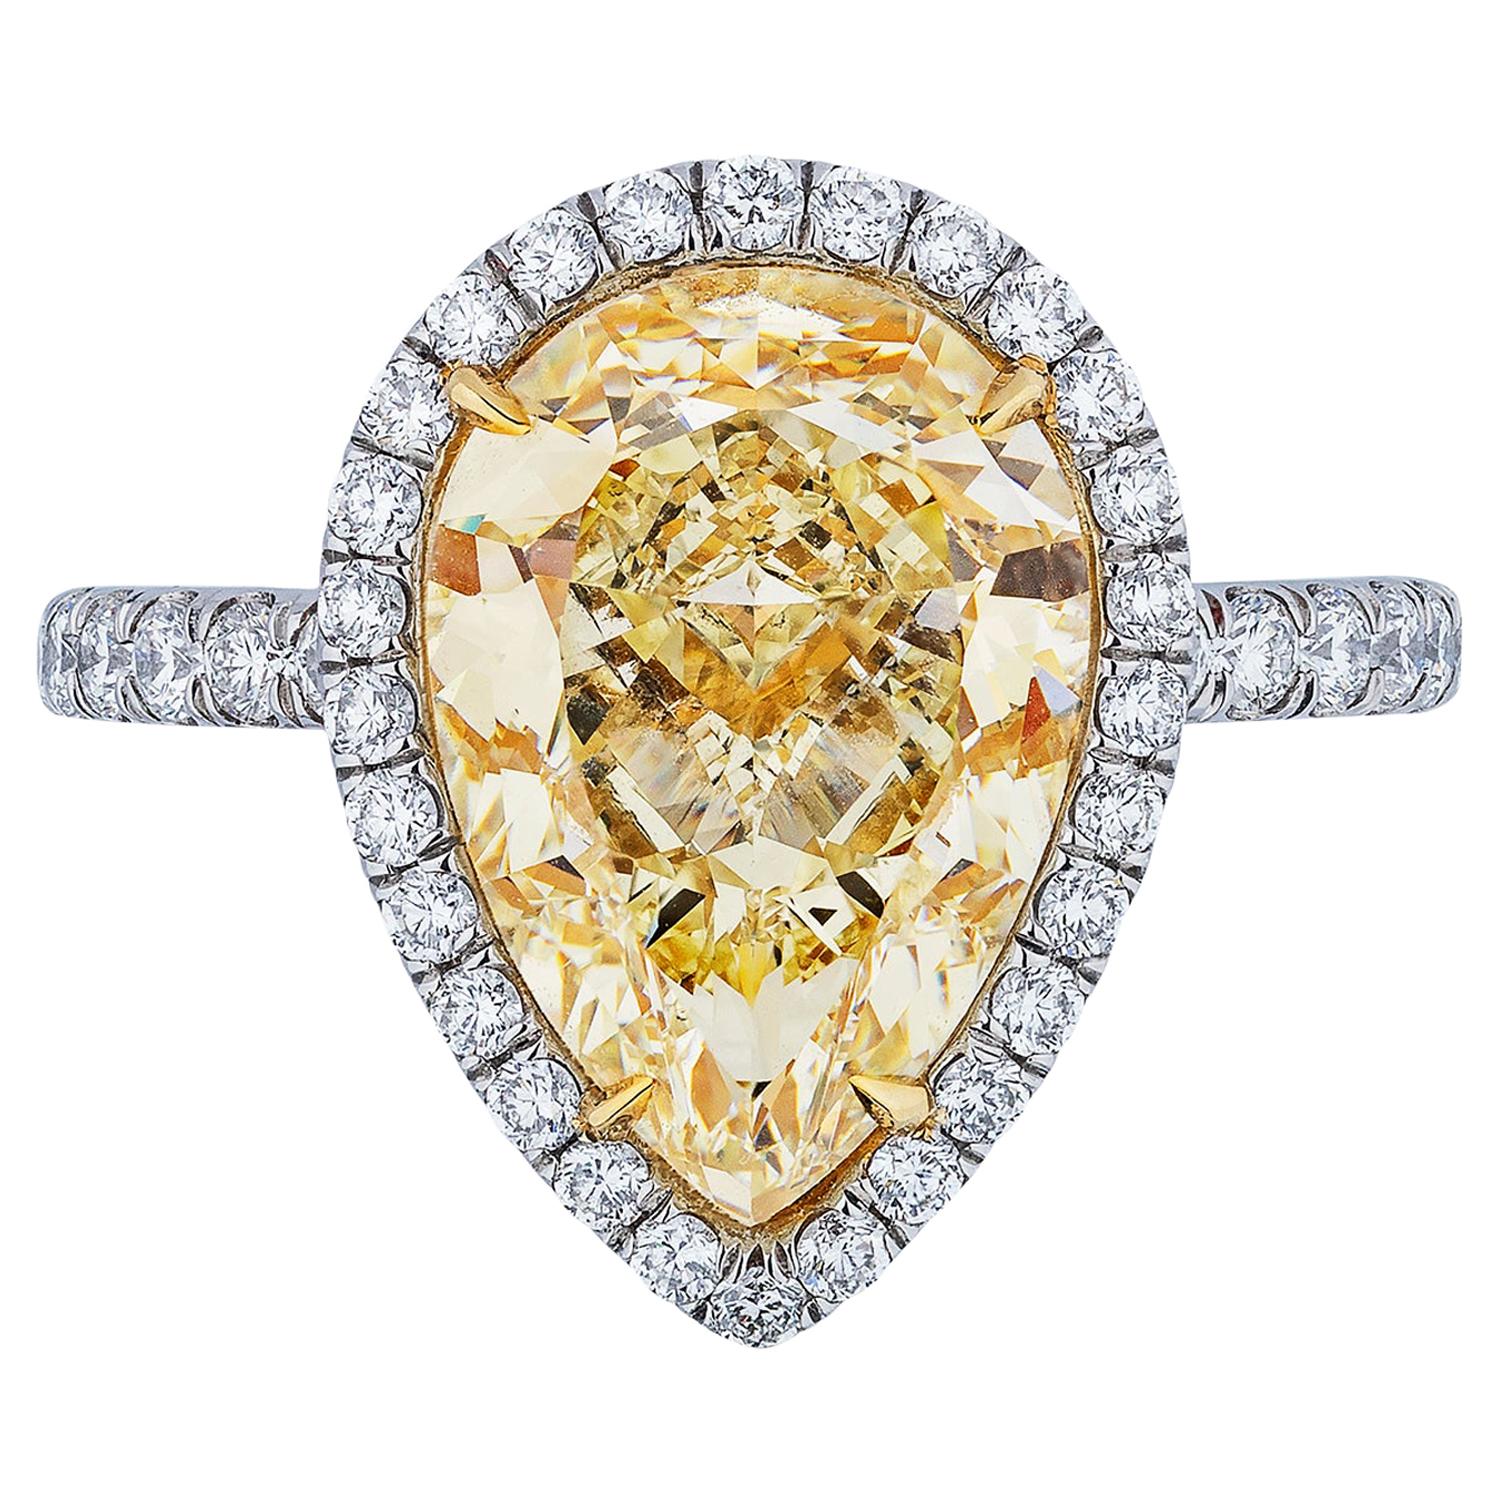 Diamant jaune en forme de poire de 5,06 carats certifié par le GIA